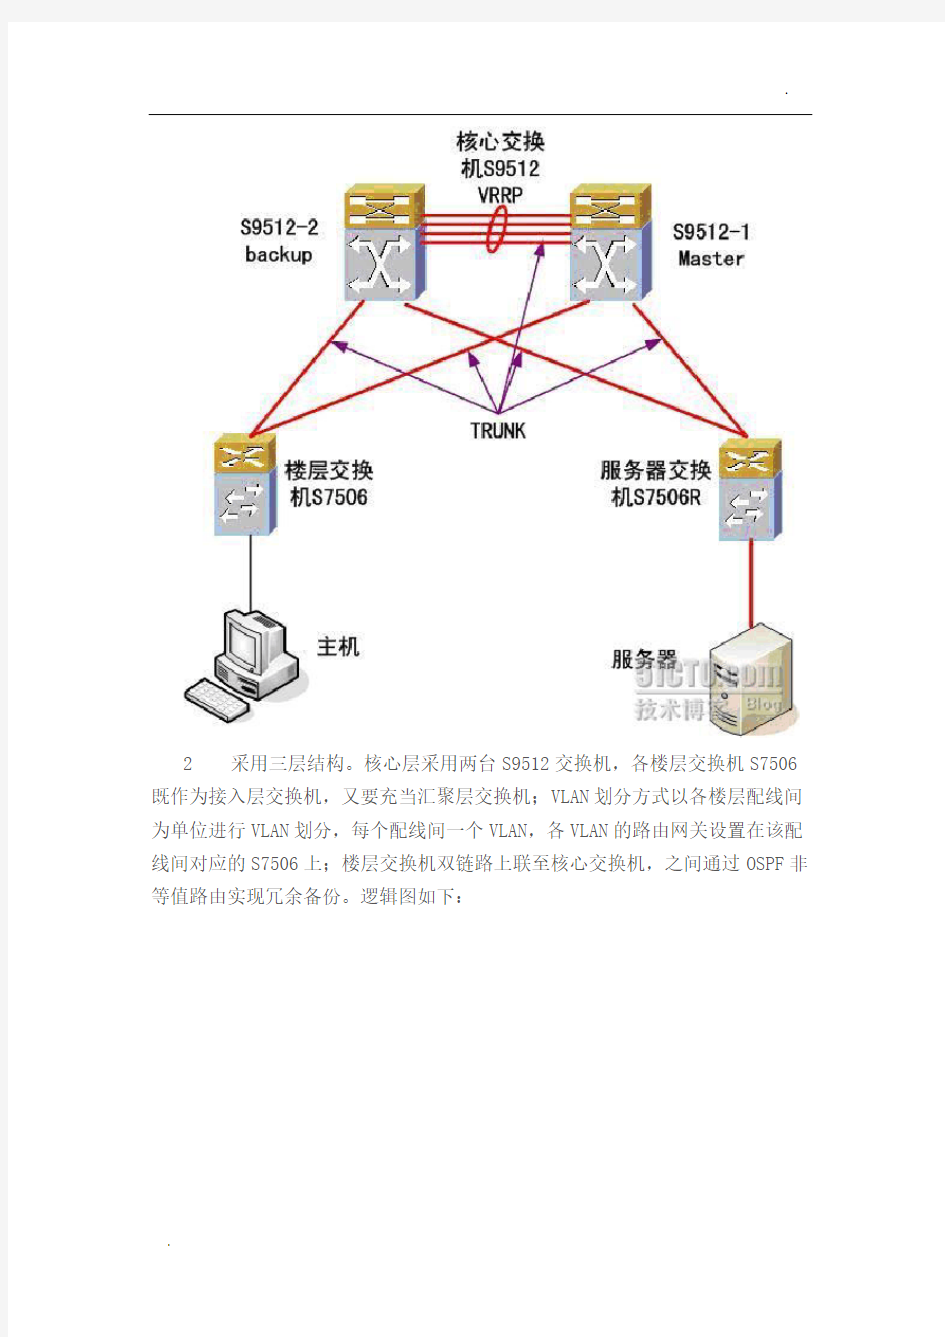 二层网络结构与三层网络结构的分析